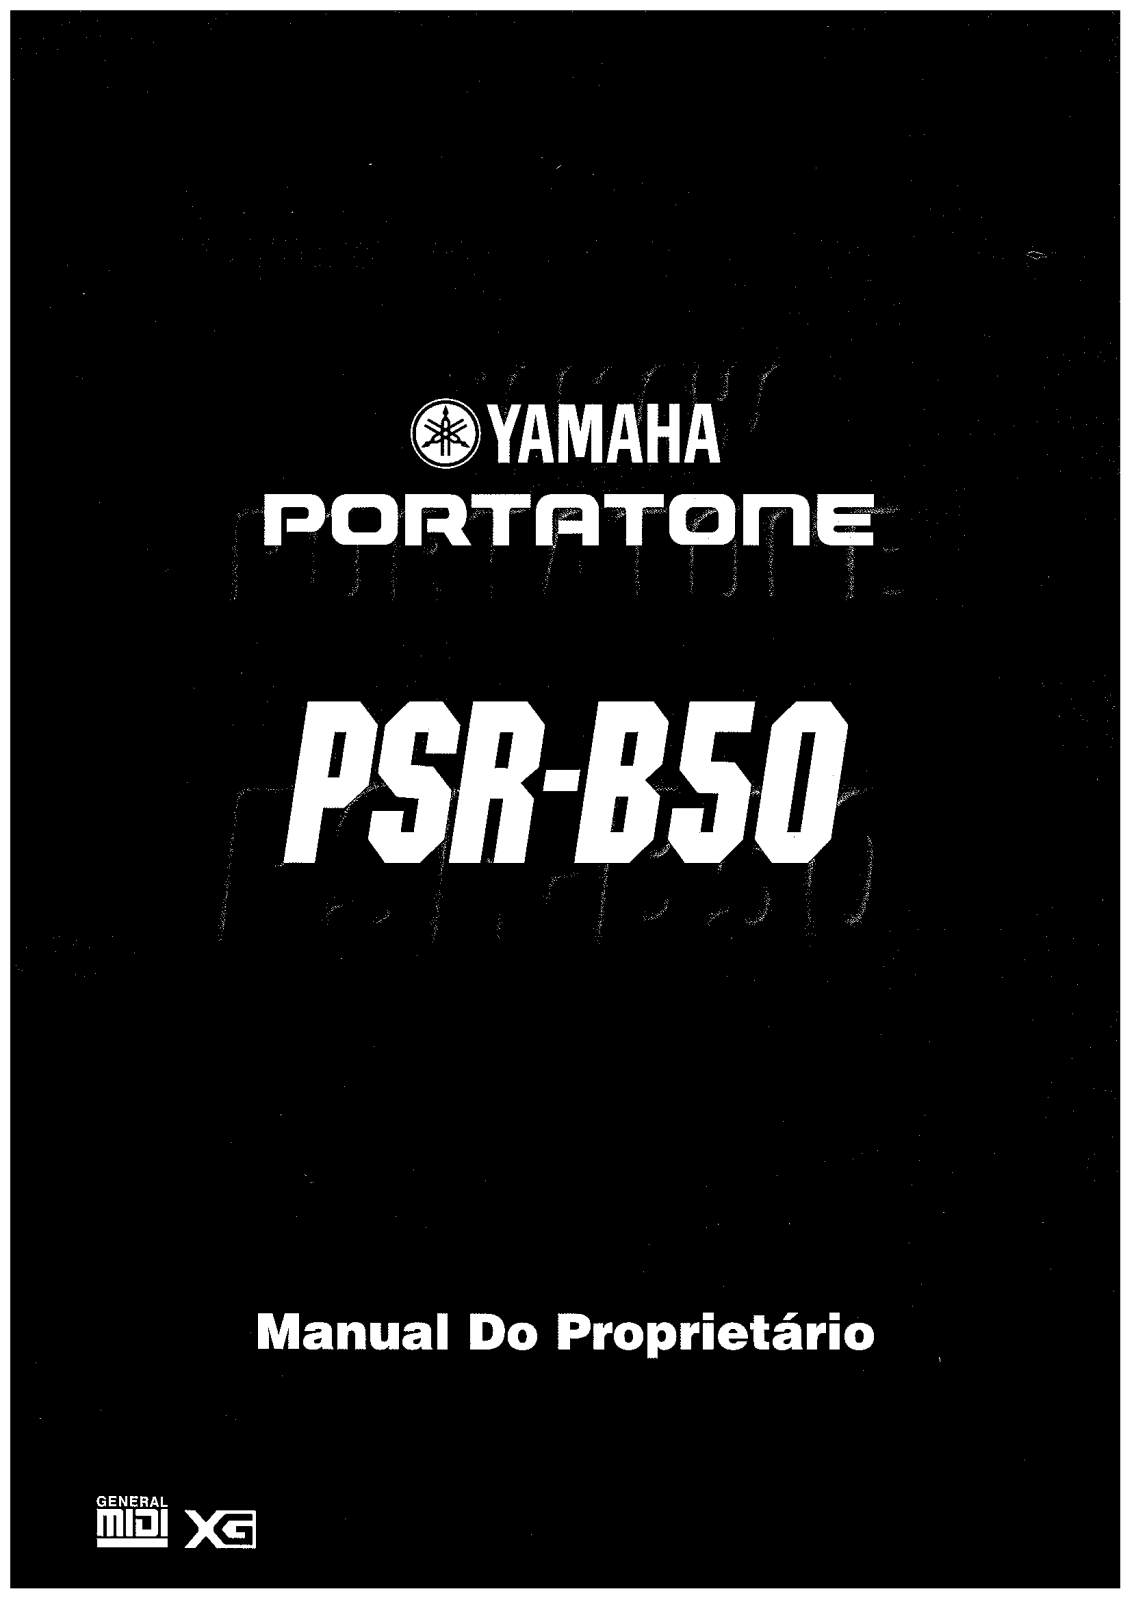 Yamaha PSR-B50 Manual